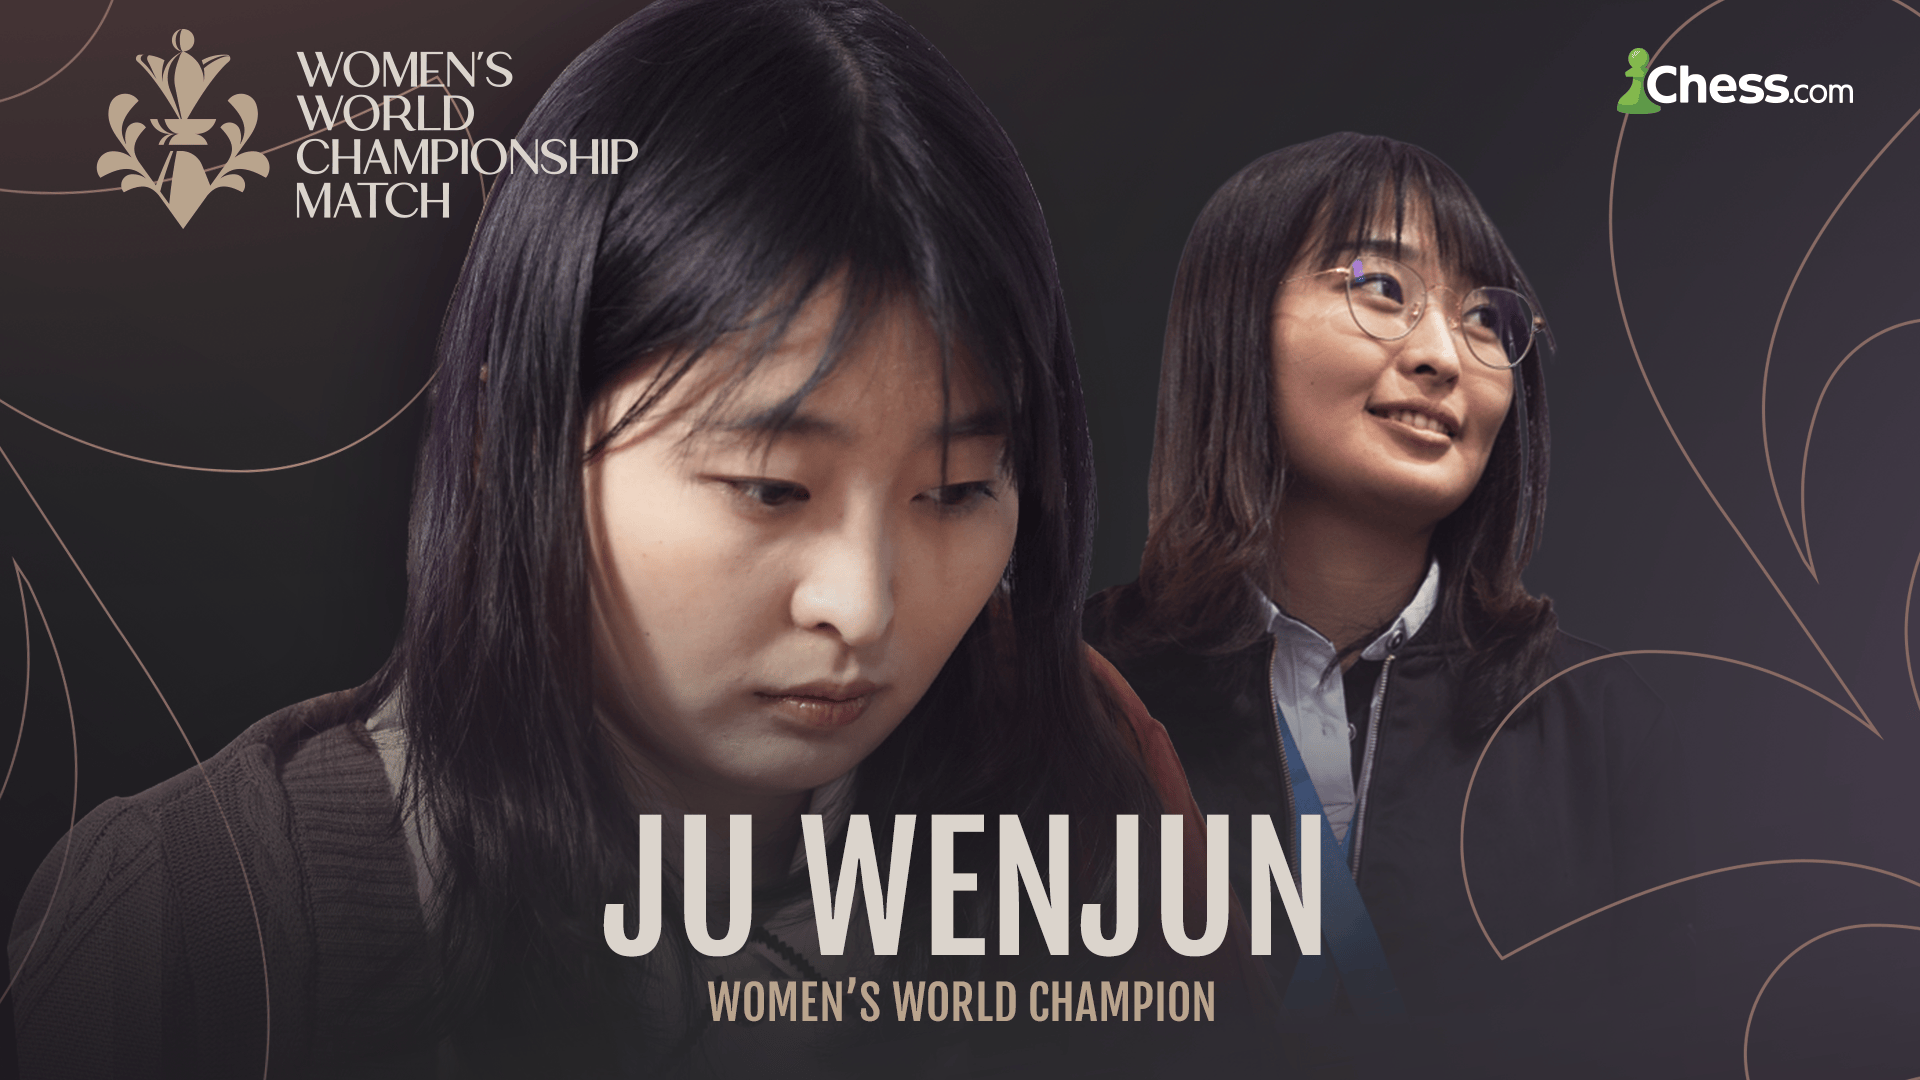 Women's WORLD CHESS Champions